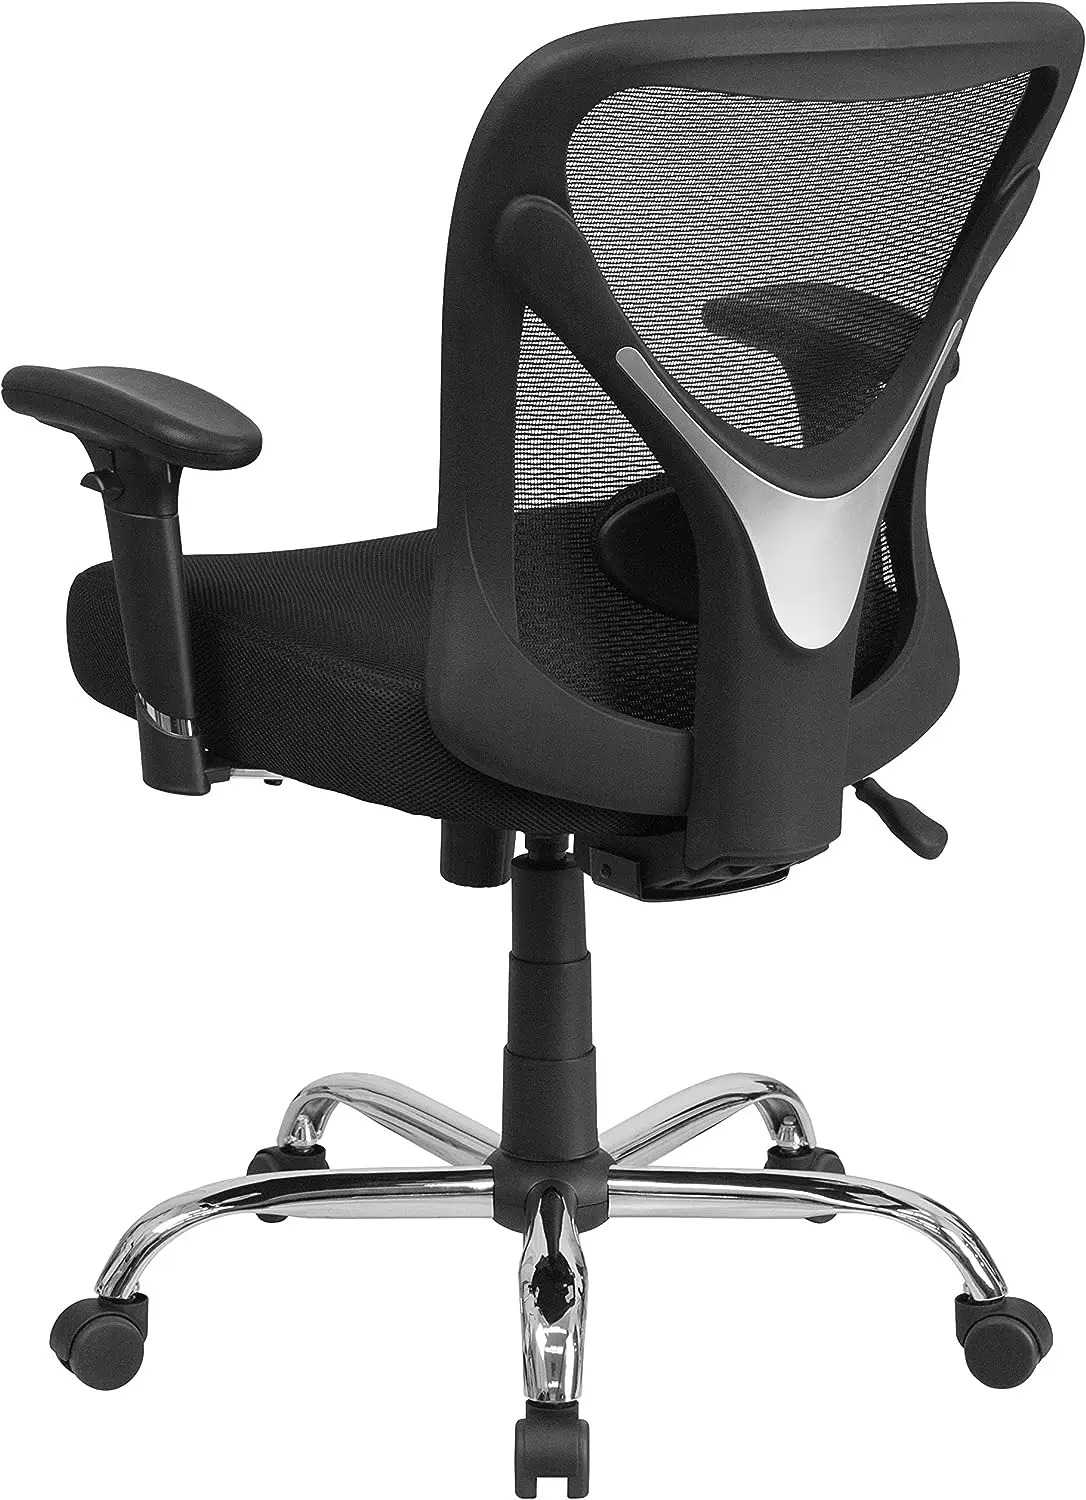 & גבוה הכיסא במשרד | גובה מתכוונן רשת סיבוב כיסא משרדי עם גלגלים - 5